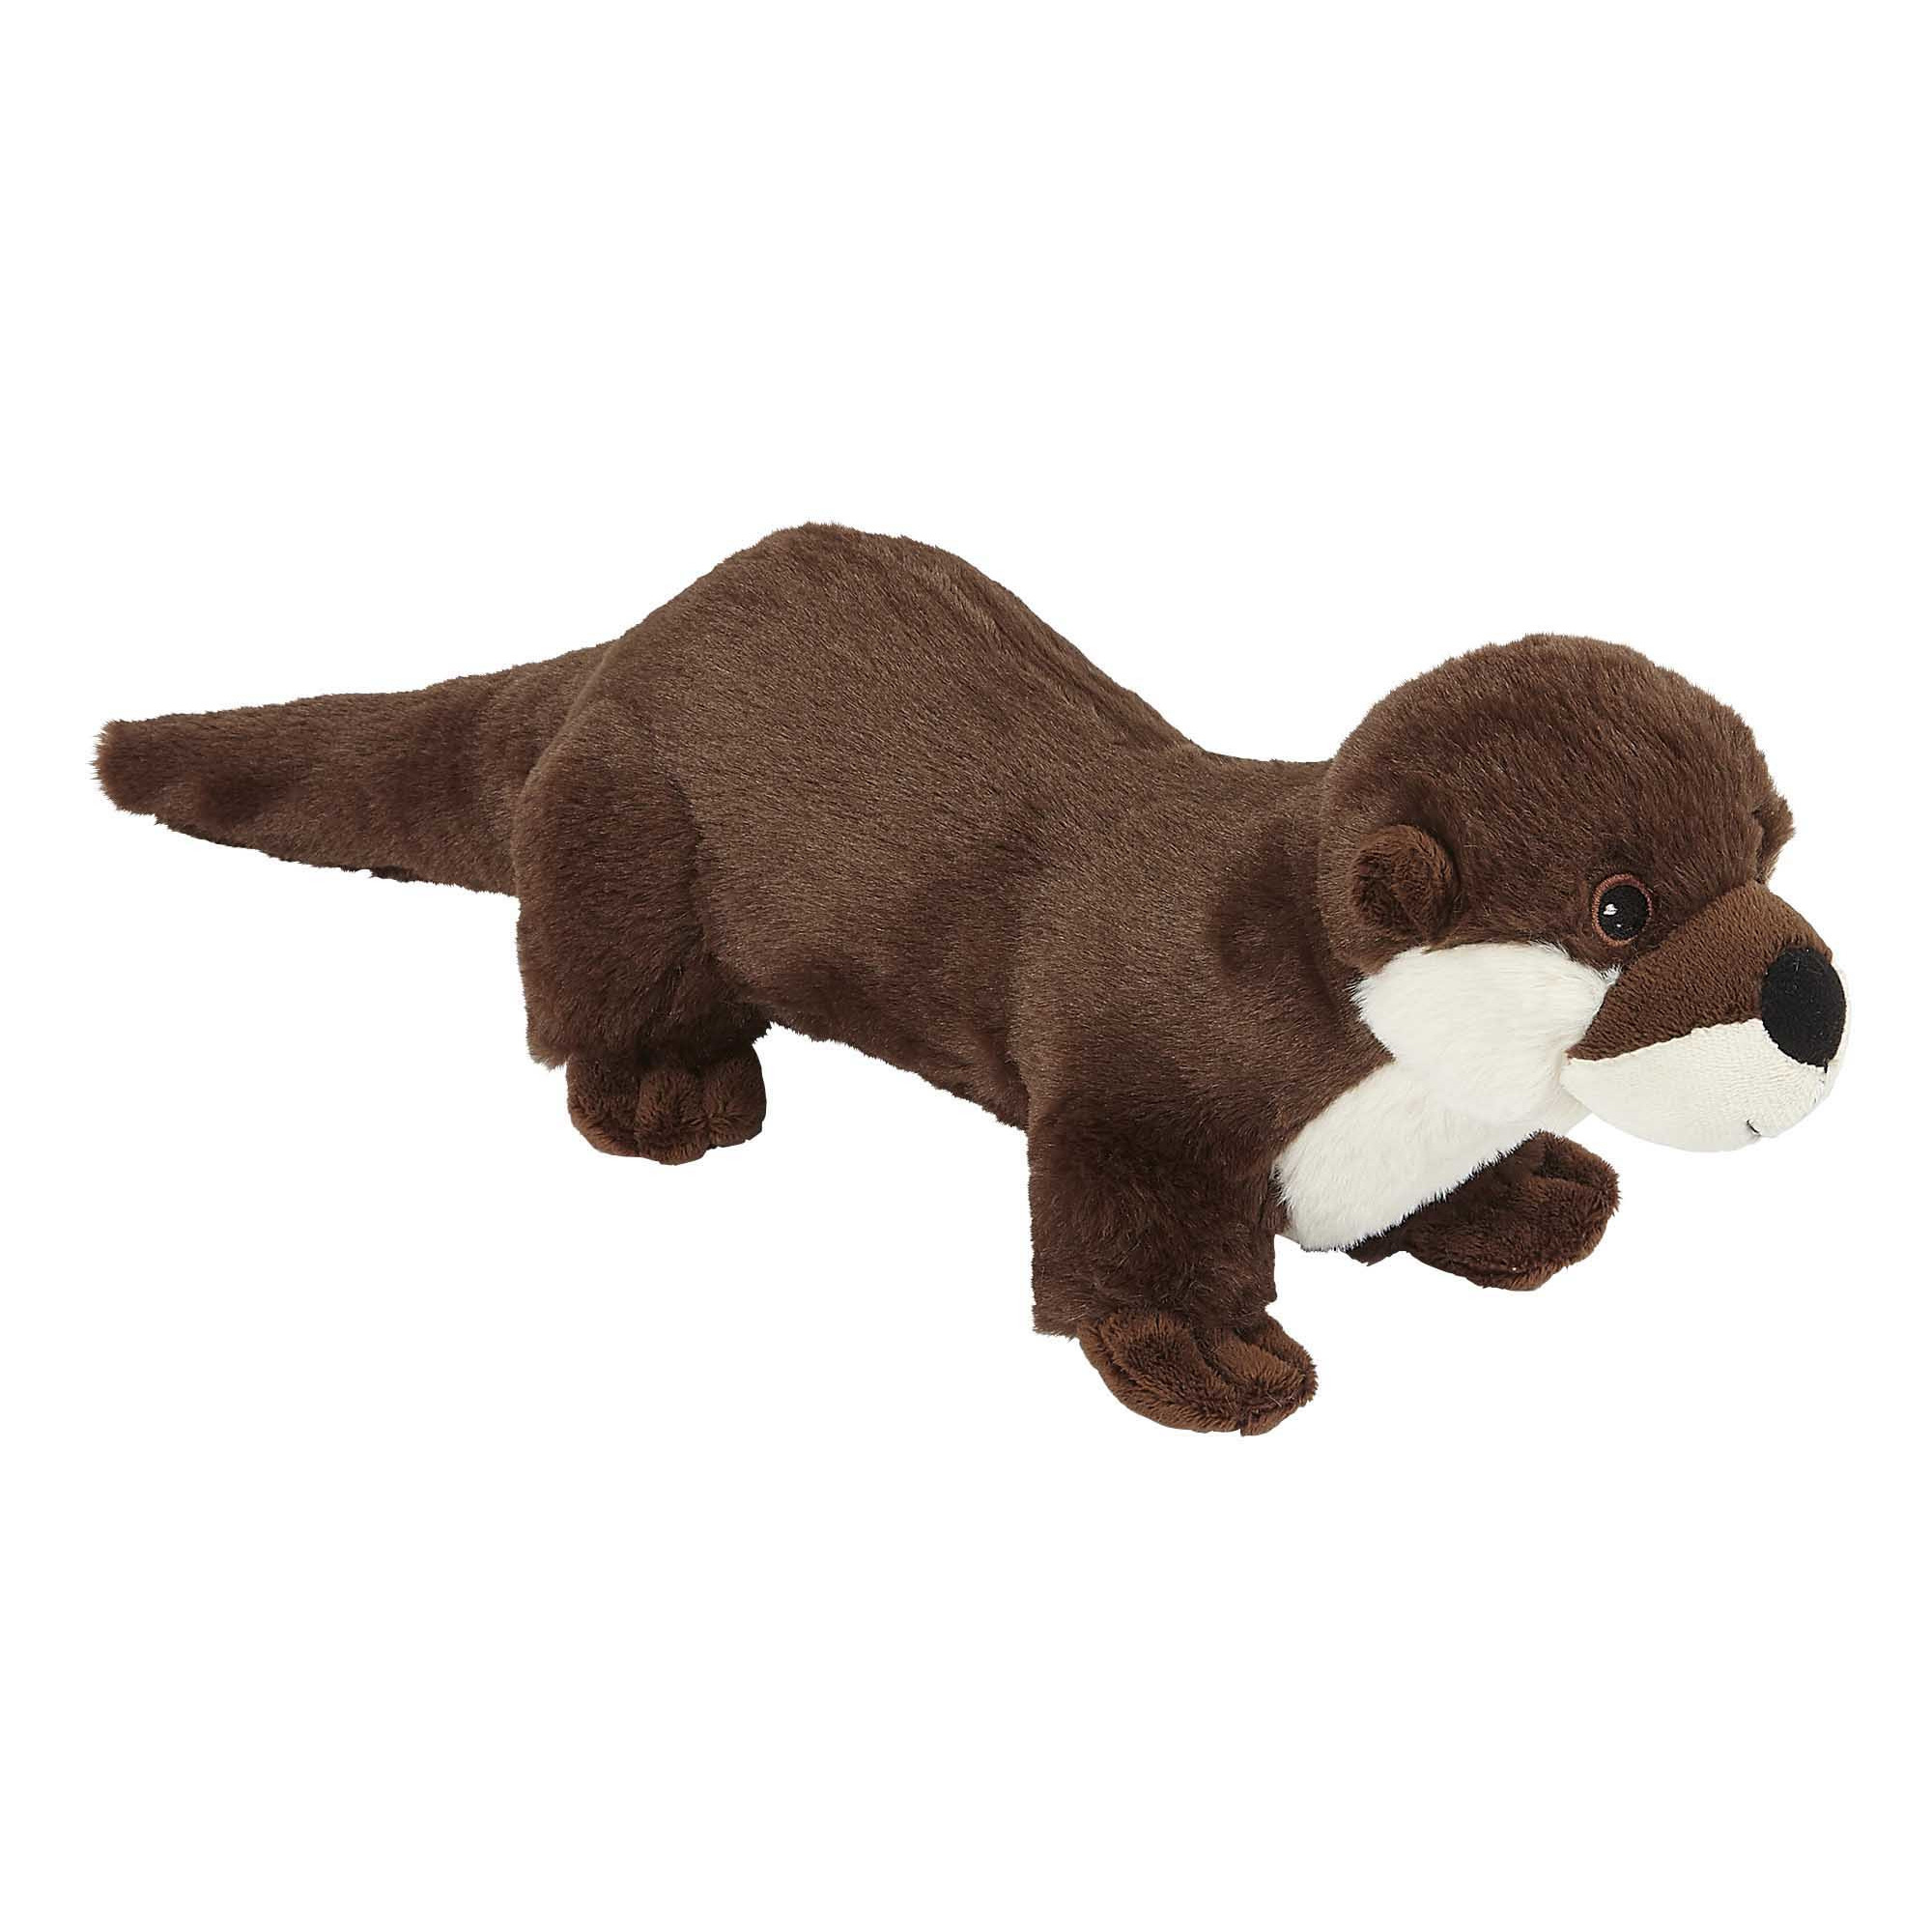 nooit marge draagbaar Pluche knuffel dieren Rivier Otter 23 cm bestellen voor € 16.99 bij het  Knuffelparadijs